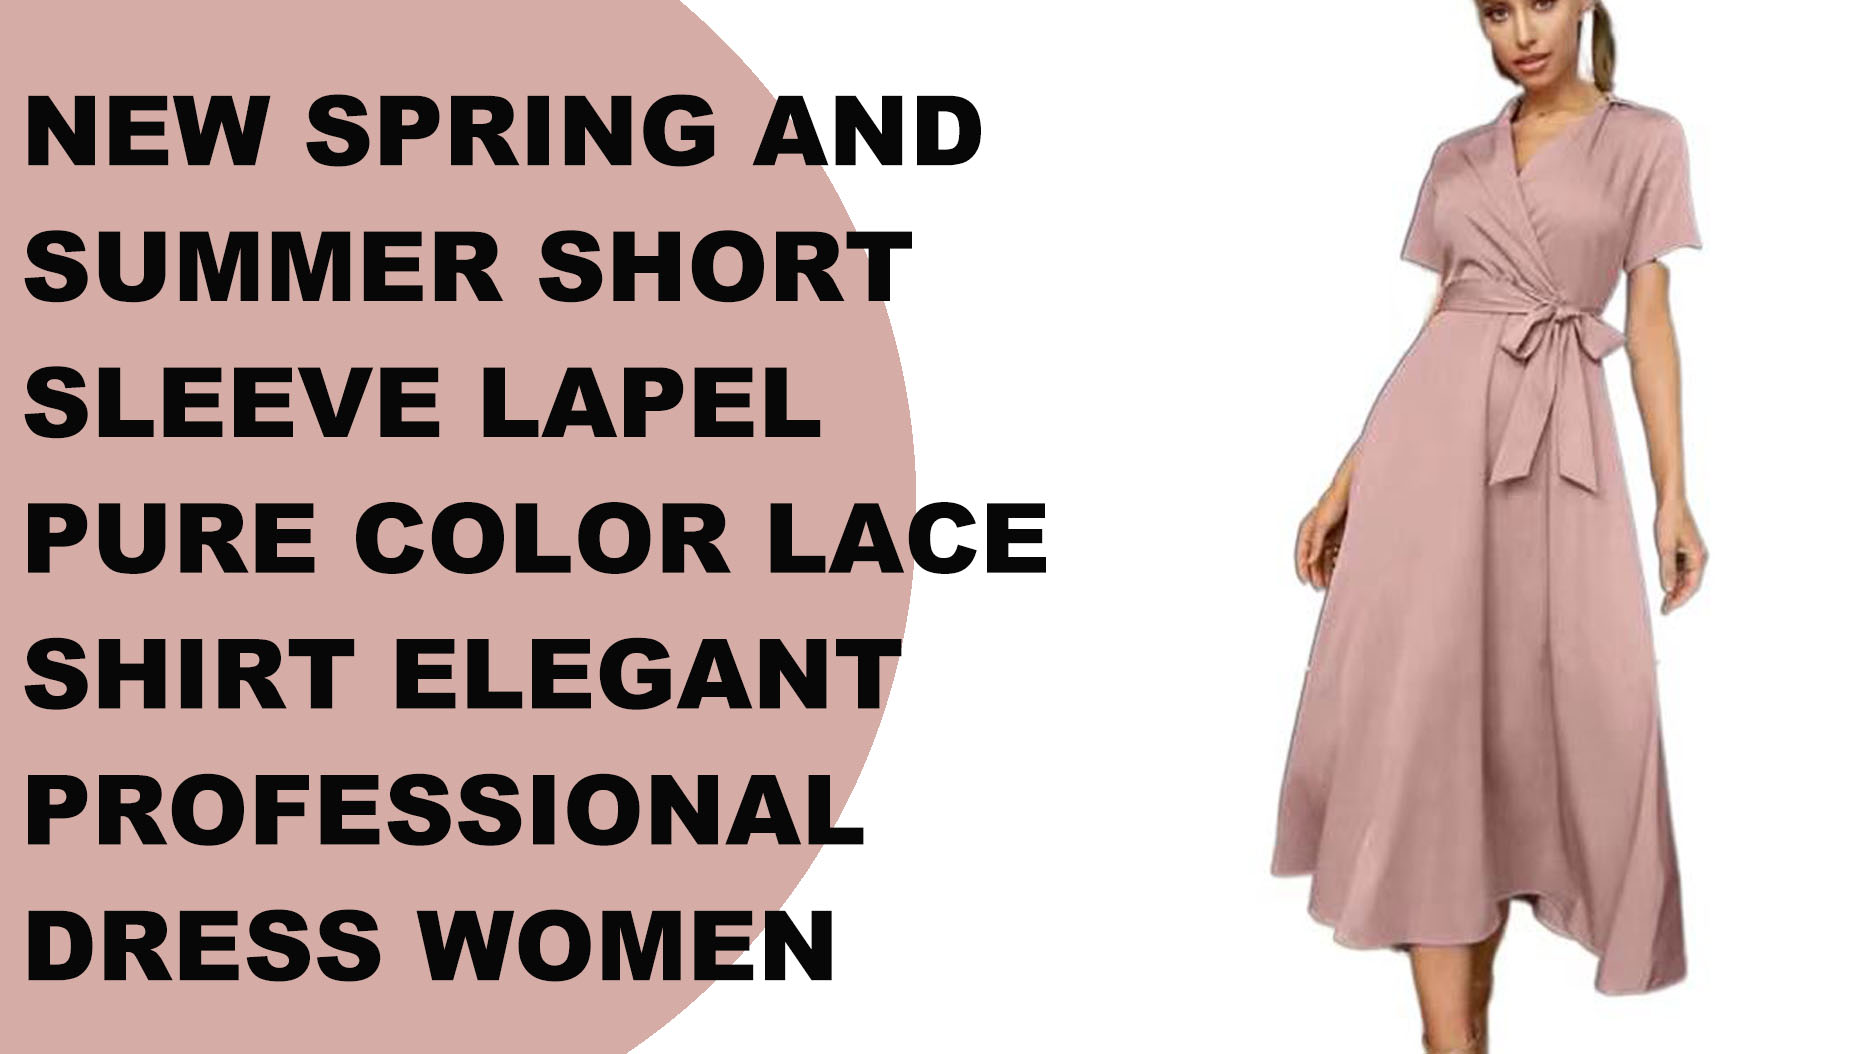 नई वसंत और गर्मियों की छोटी आस्तीन वाली लैपेल शुद्ध रंग की लेस शर्ट, महिलाओं की सुरुचिपूर्ण पेशेवर पोशाक